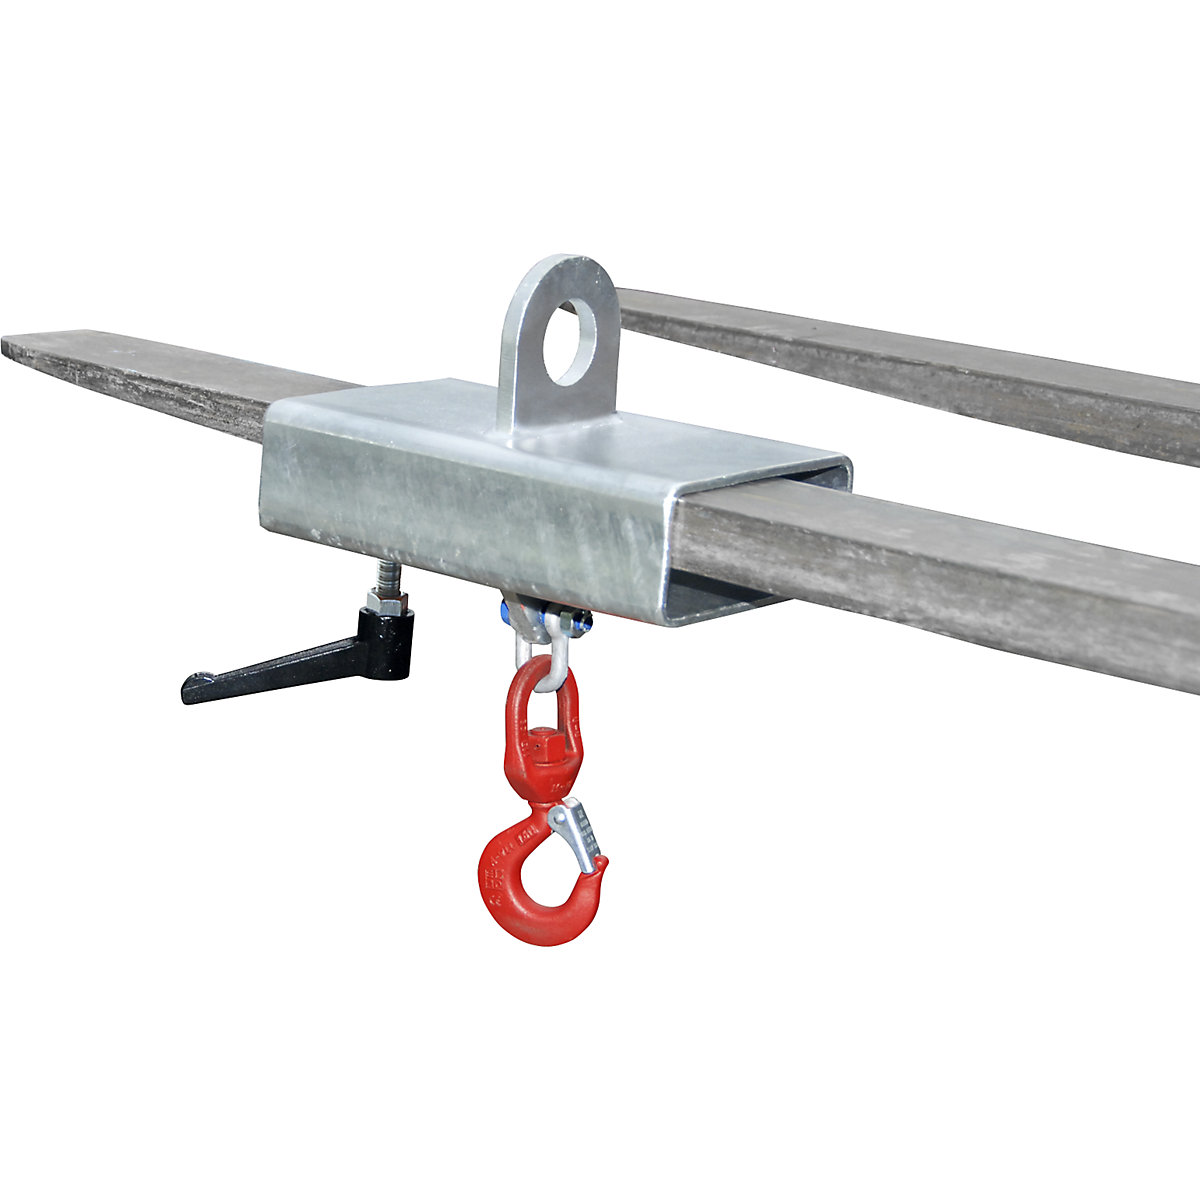 EUROKRAFTpro – Cârlig pentru sarcini pentru 1 furcă, capacitate portantă 1000 kg, zincat la cald